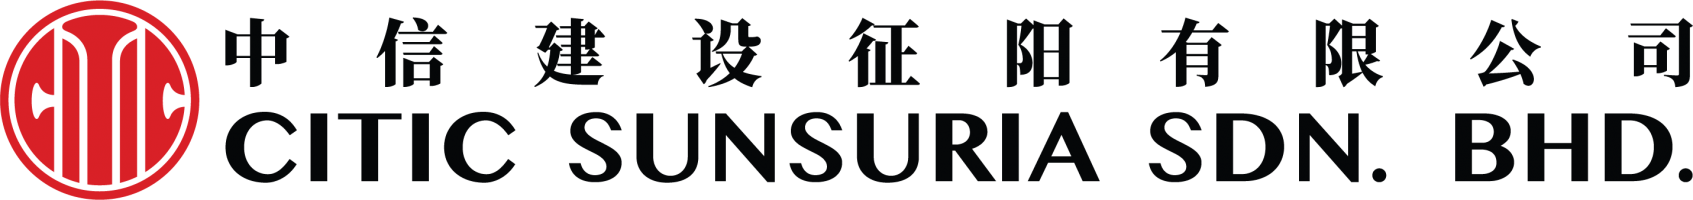 Company logo for Citic Sunsuria Sdn Bhd